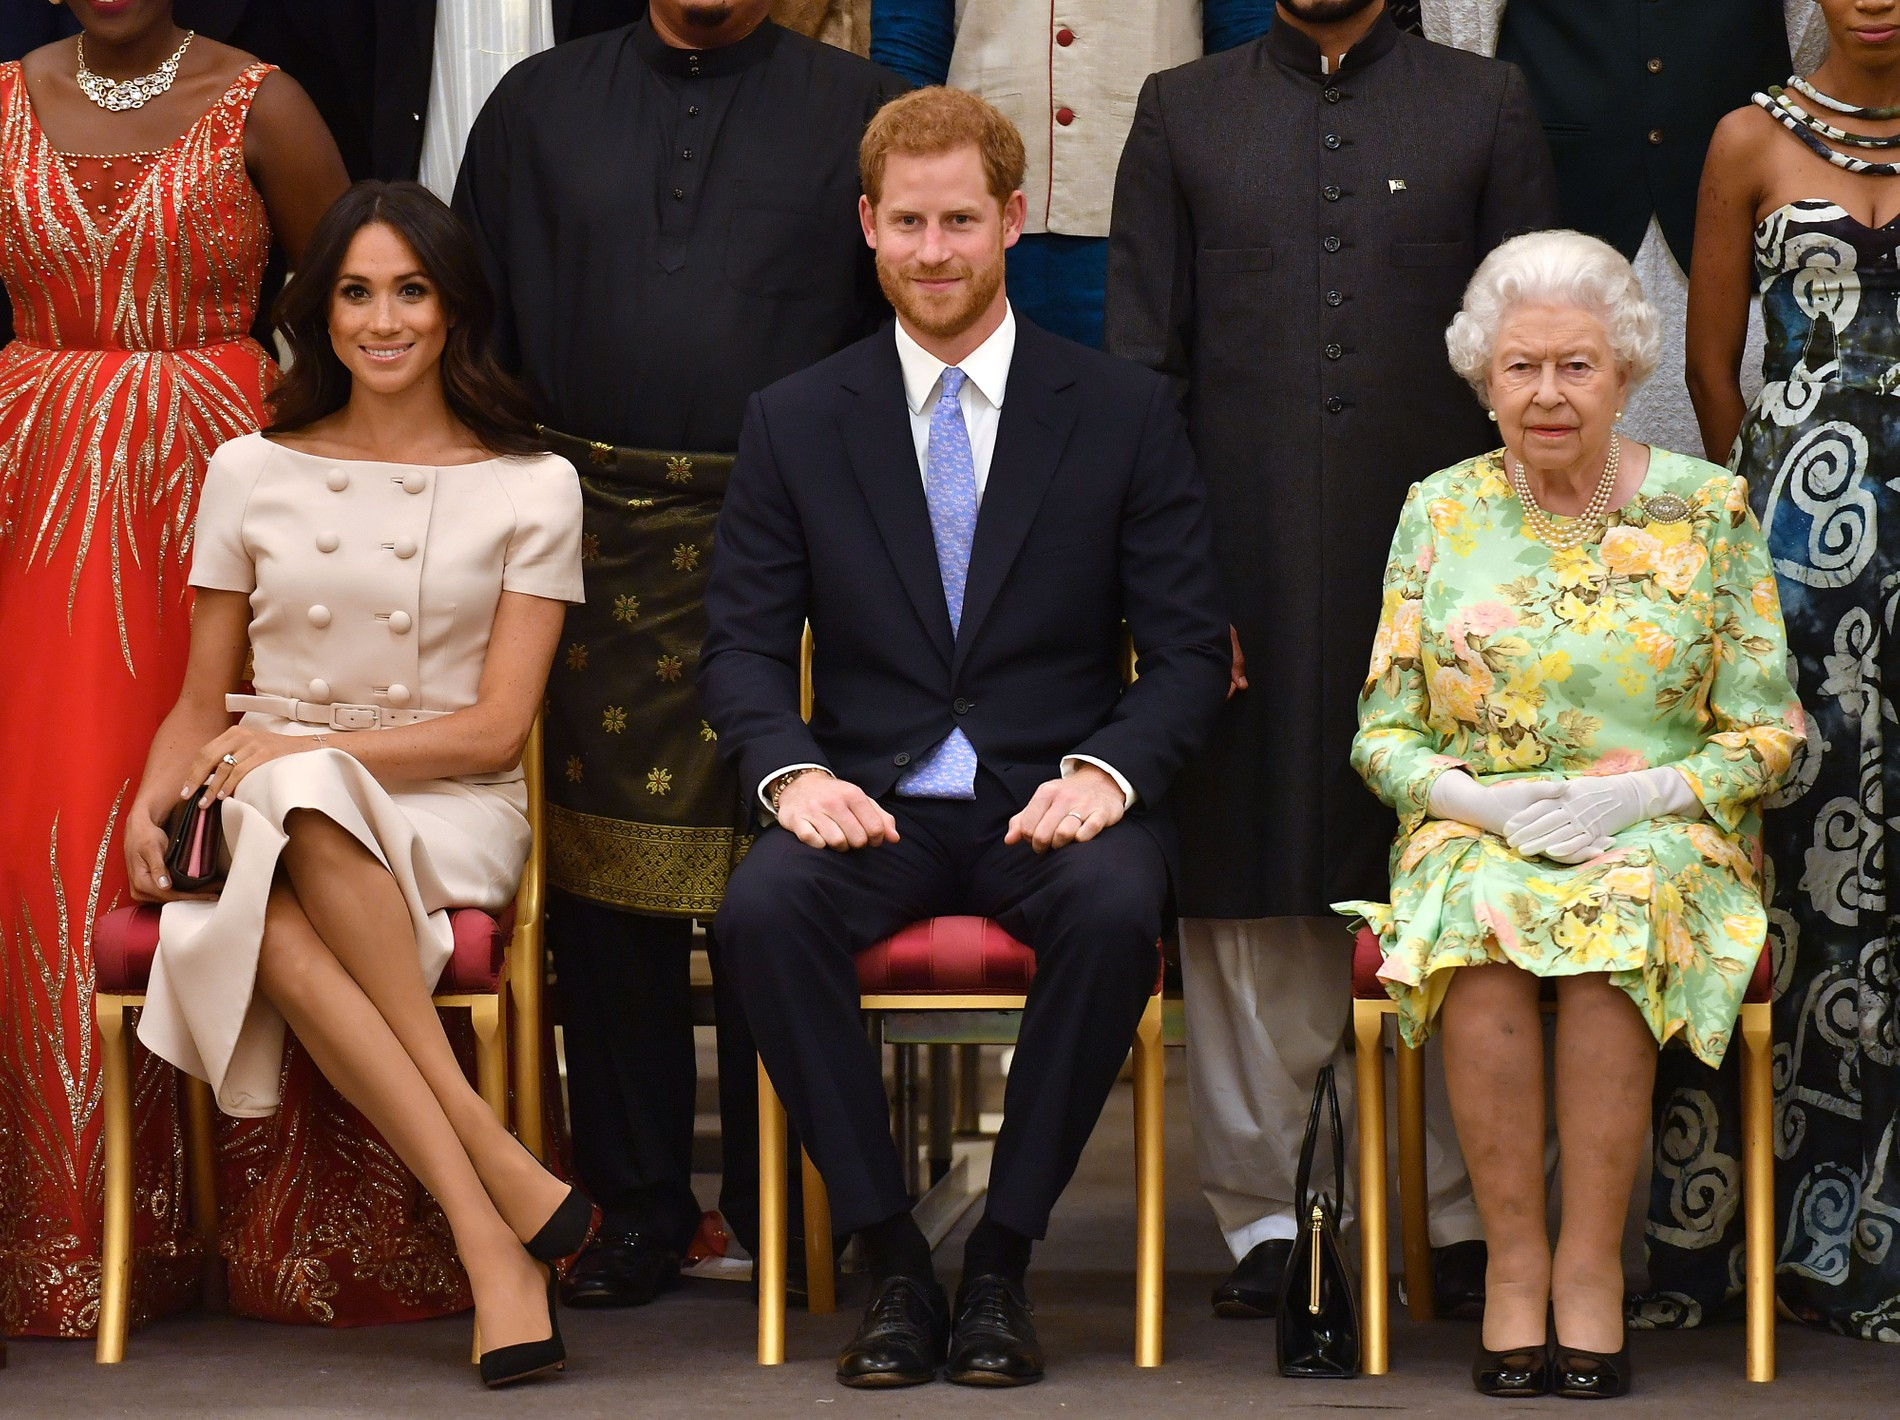 Меган Маркл, принц Гарри и Елизавета II
Фото: Getty Images